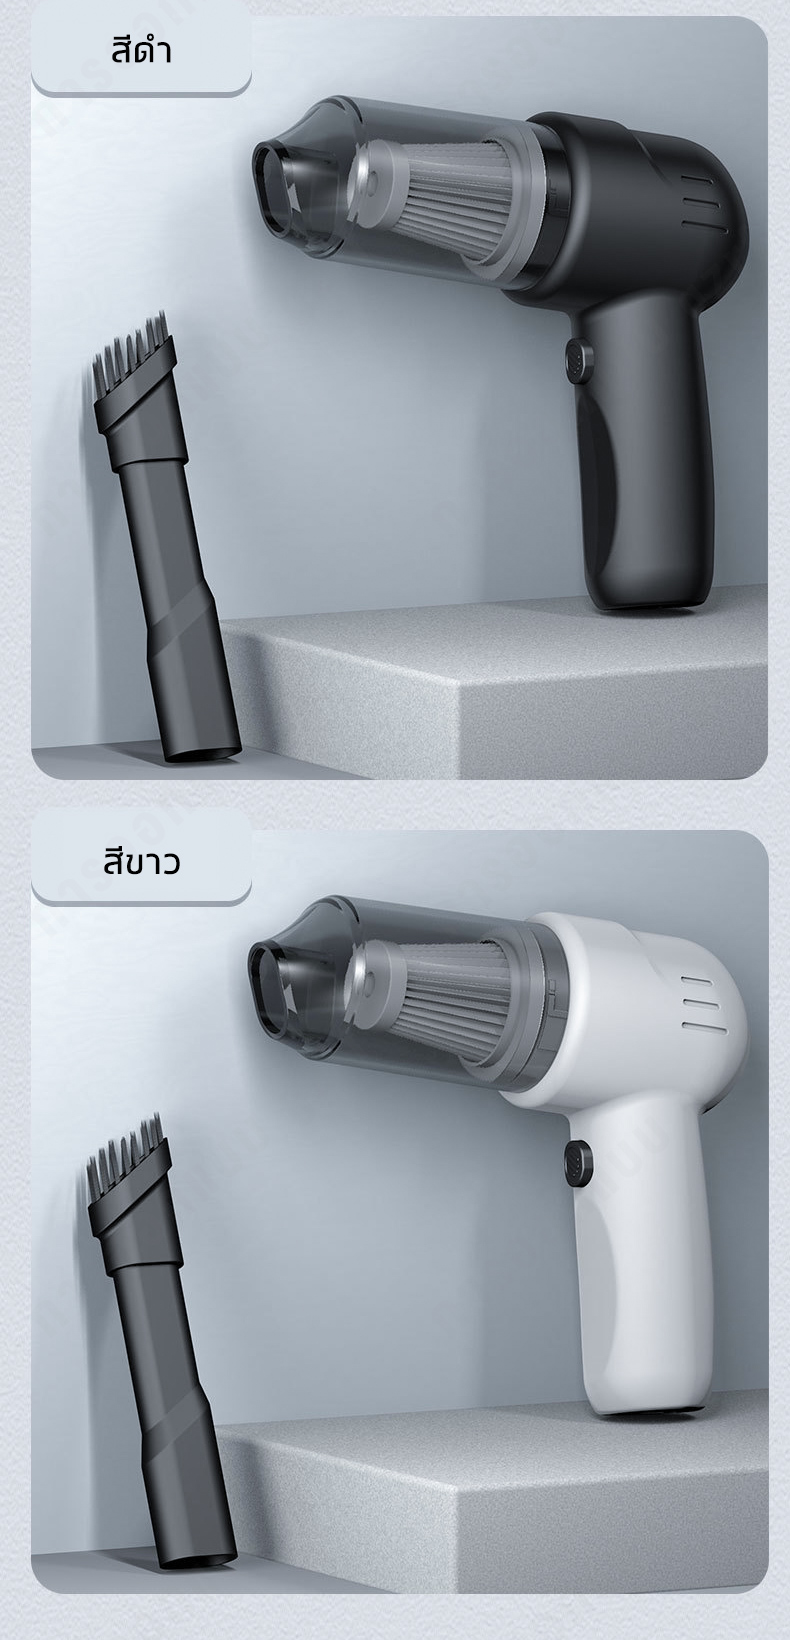 เกี่ยวกับ Mini USB Vacuum Cleaner Portable Computer Keyboard Brush Nozzle Dust Collector Handheld S Clean Kit for Cleaning Laptop PC USB Handheld Sn Machine HK-6019 YESOK